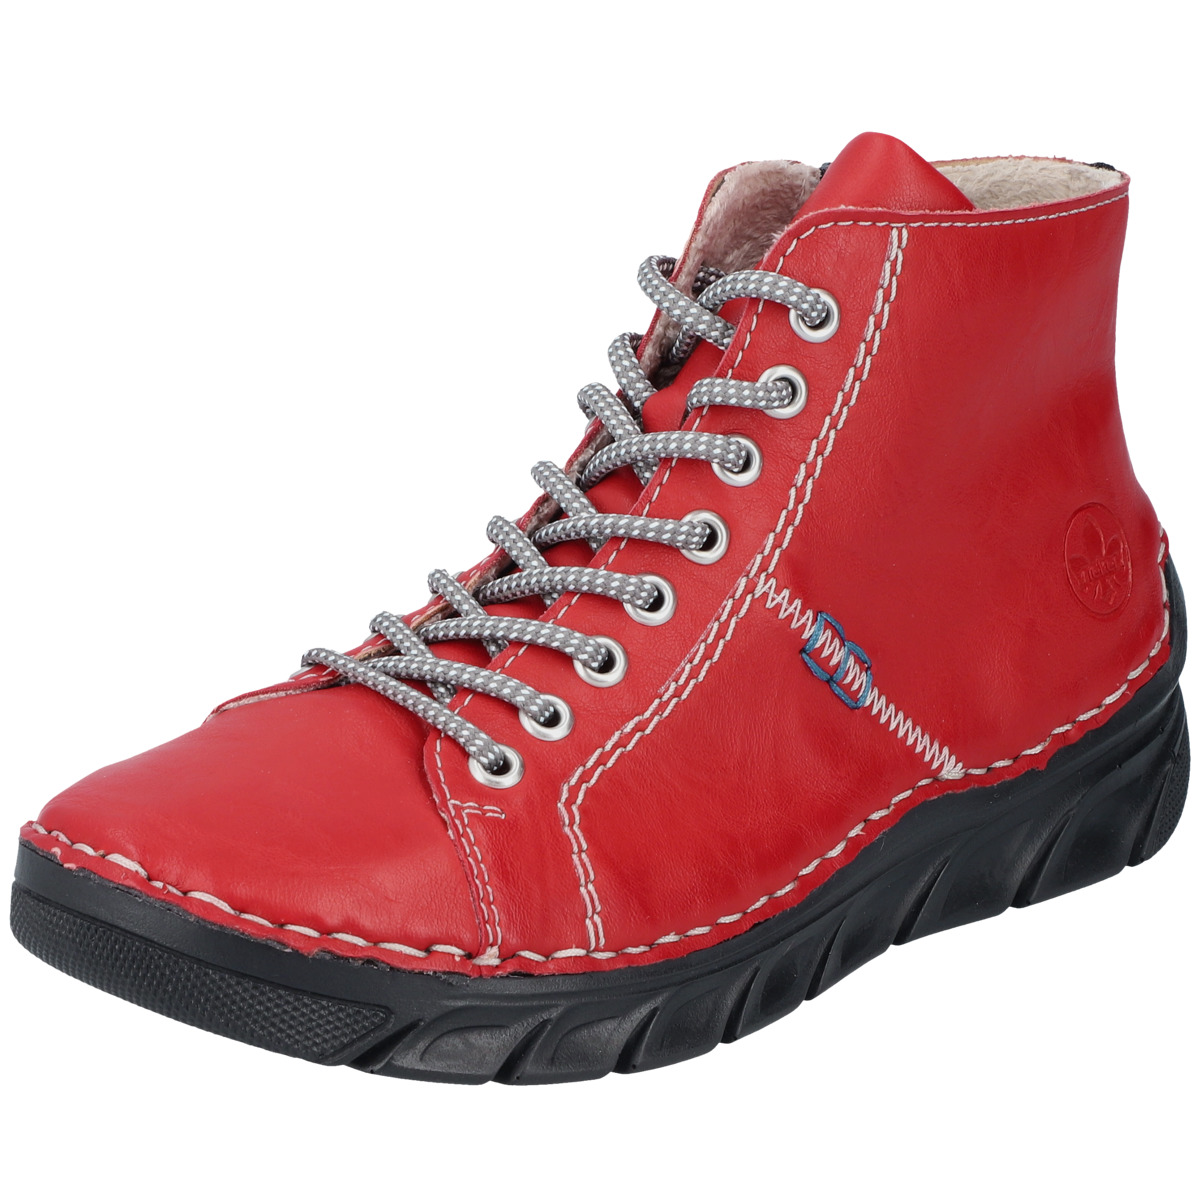 Rieker 55020 Boots rot